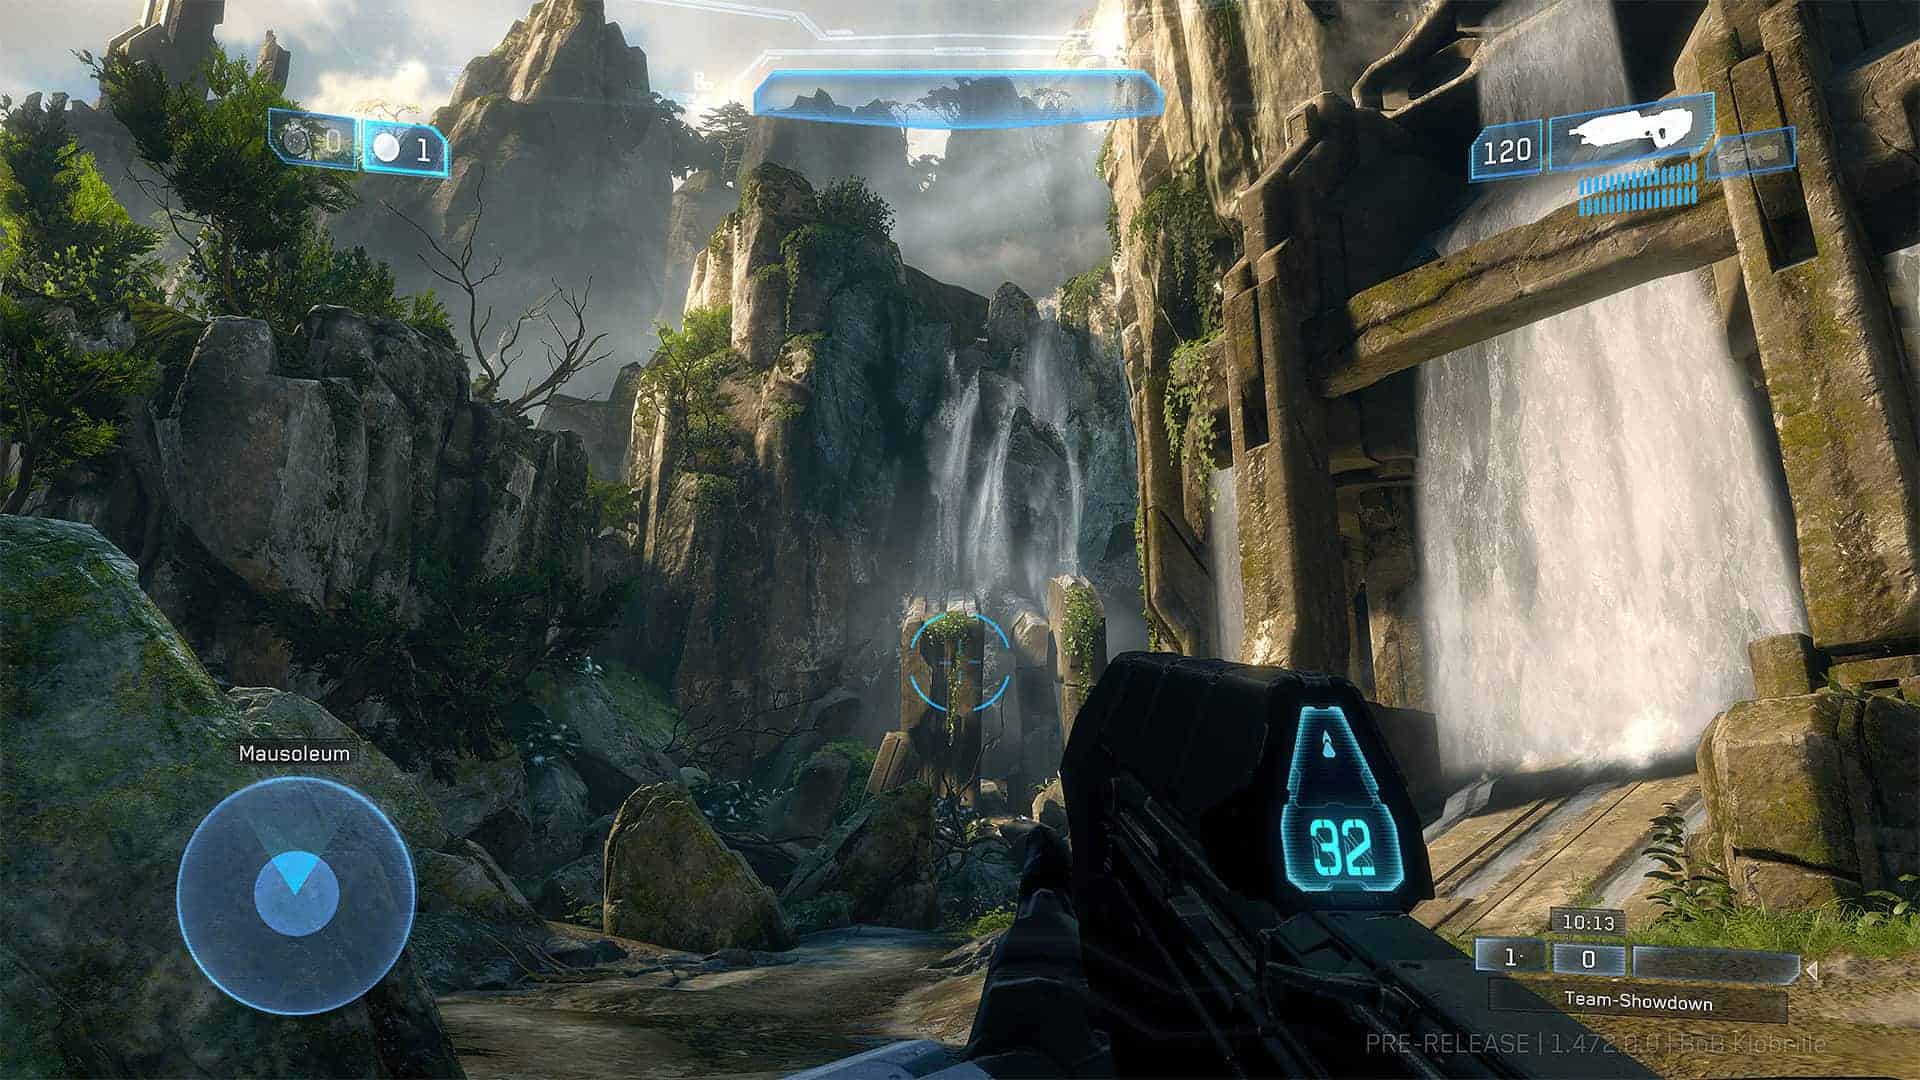 Halo 2 anniversary campaign PC